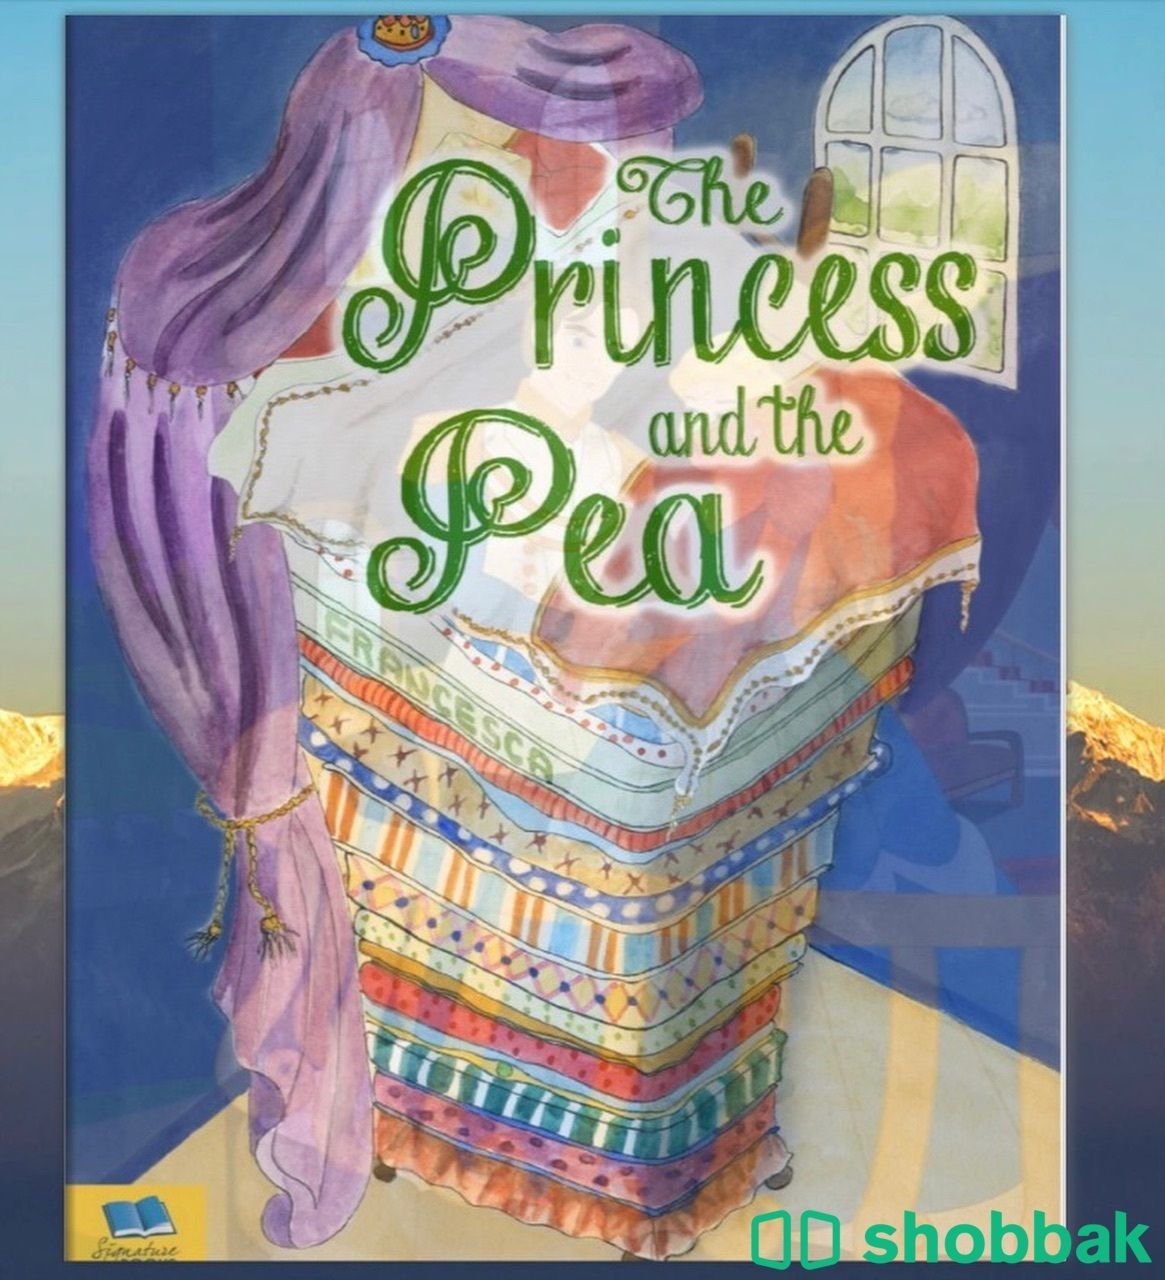 The story of the princess and the pea Shobbak Saudi Arabia